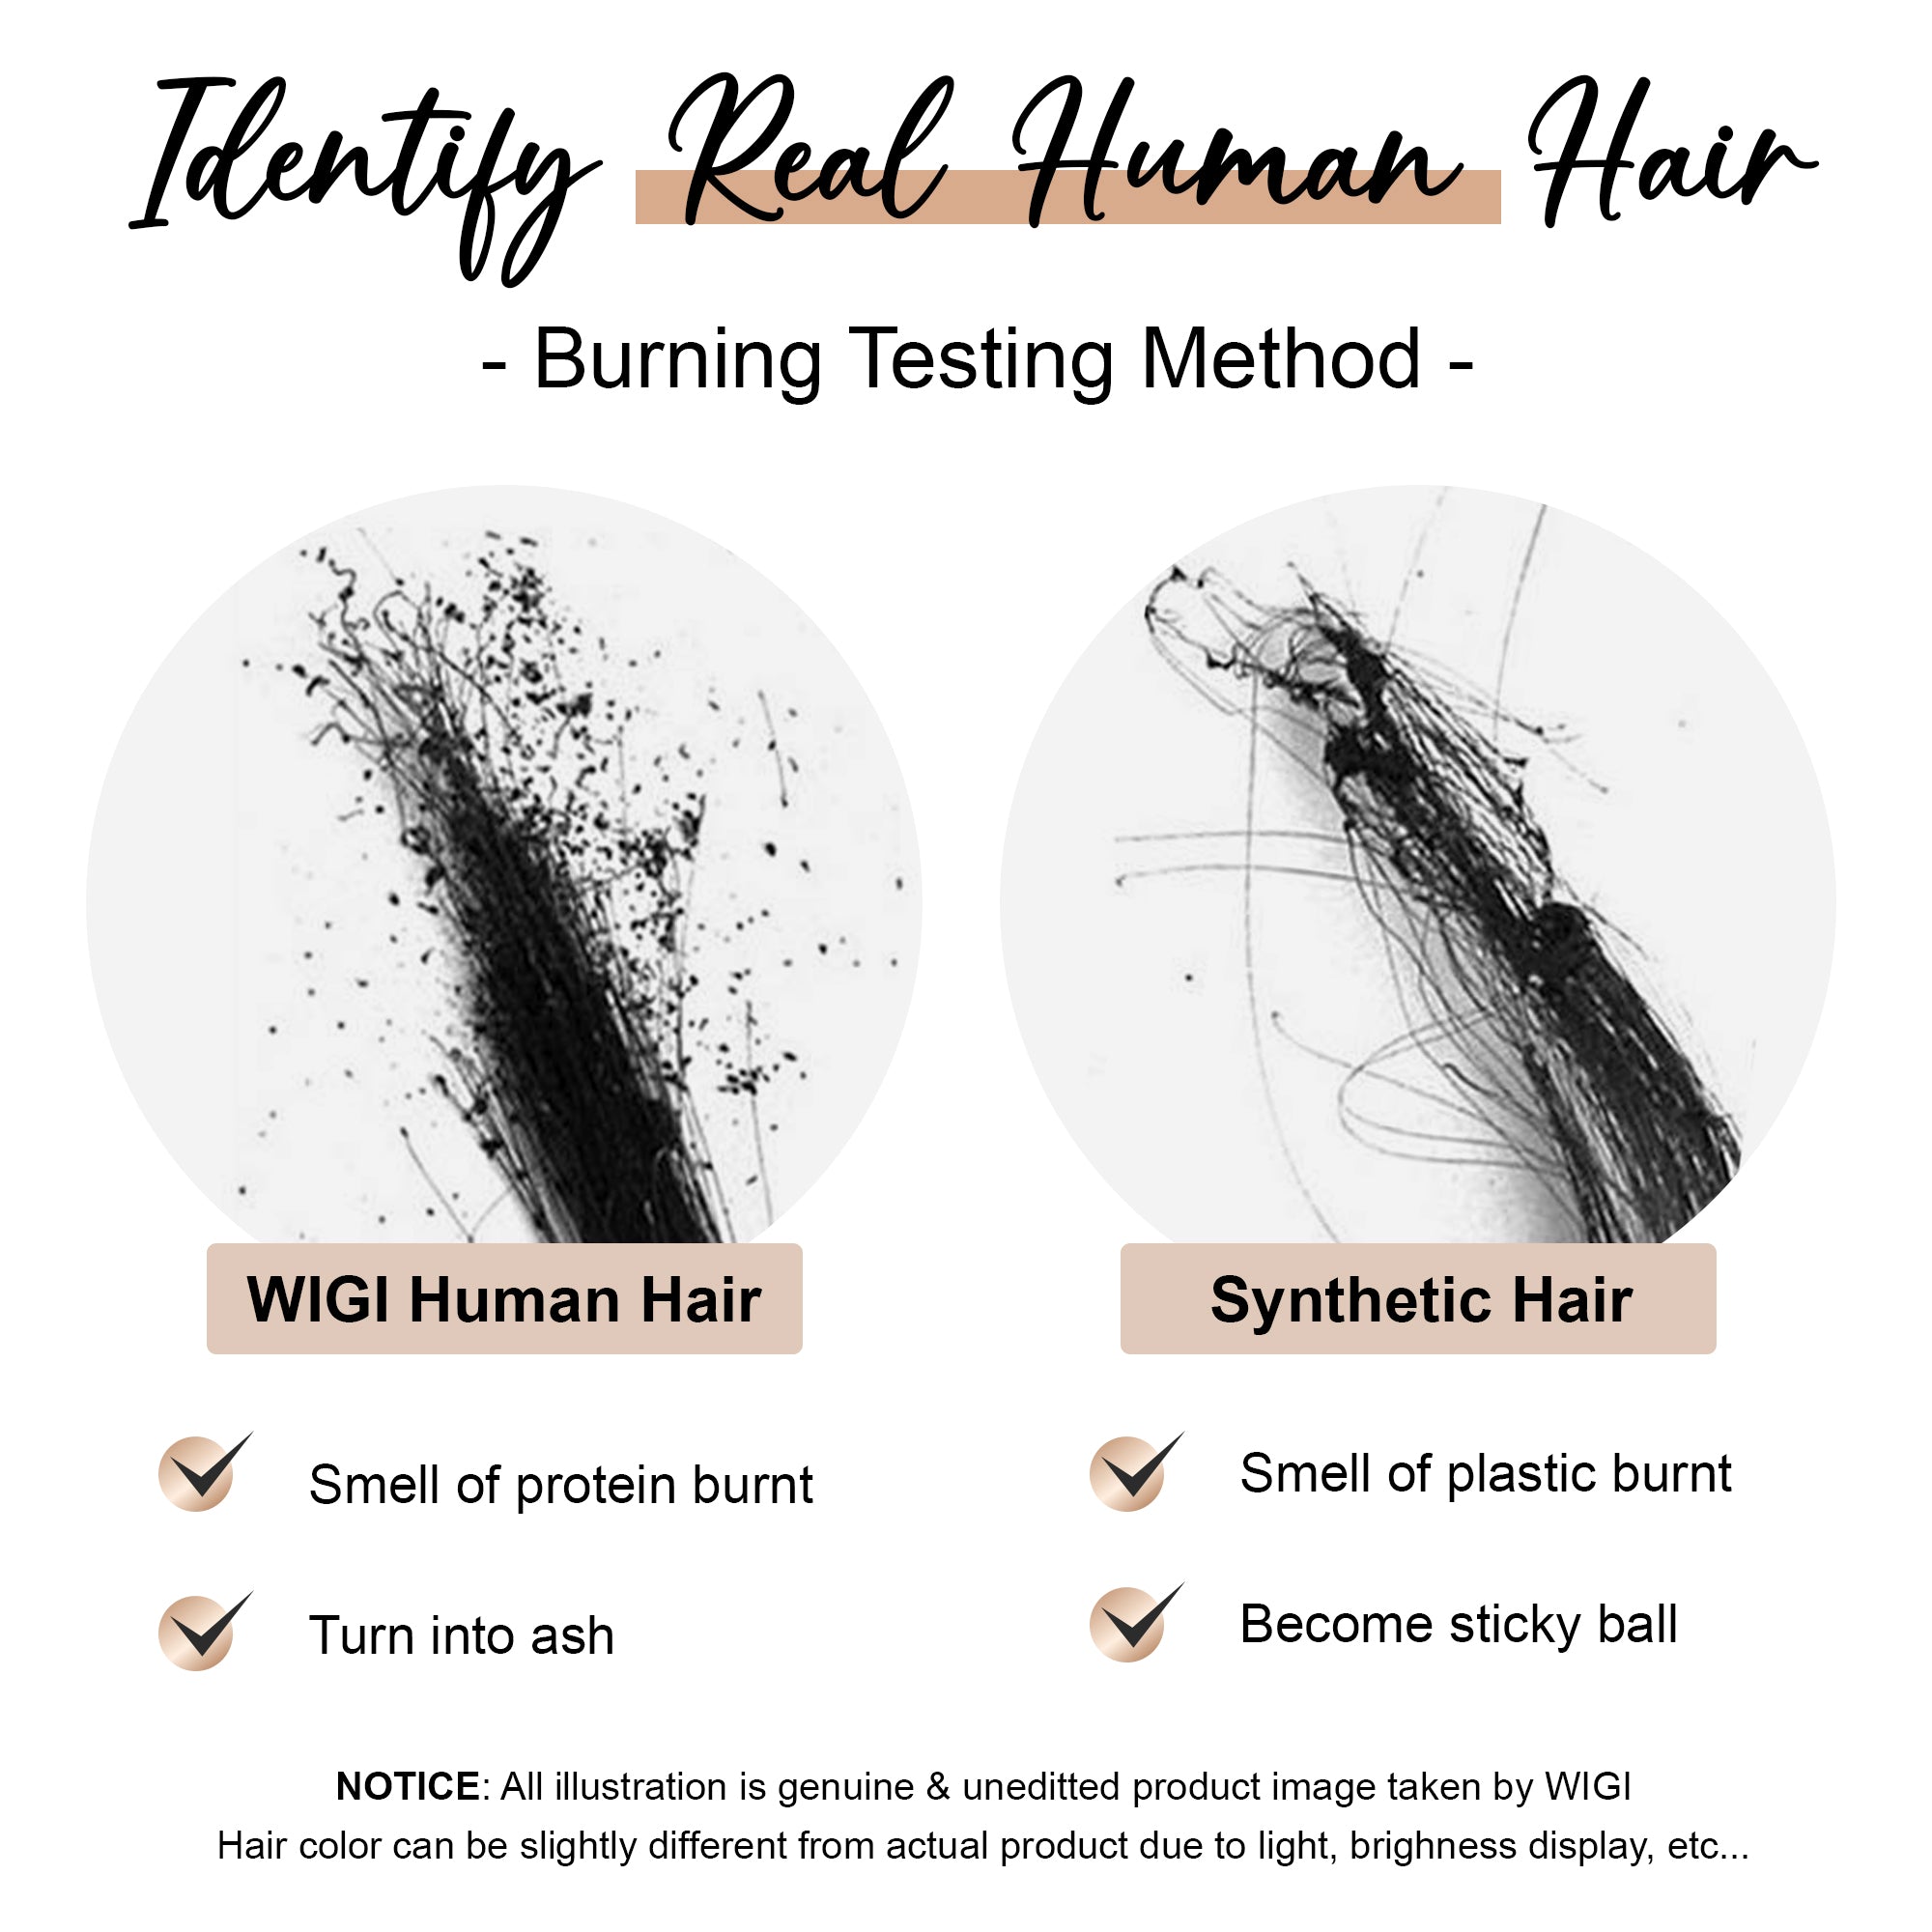 Natural Black (1B) Tape in Hair Extensions - 100% Premium Human Hair